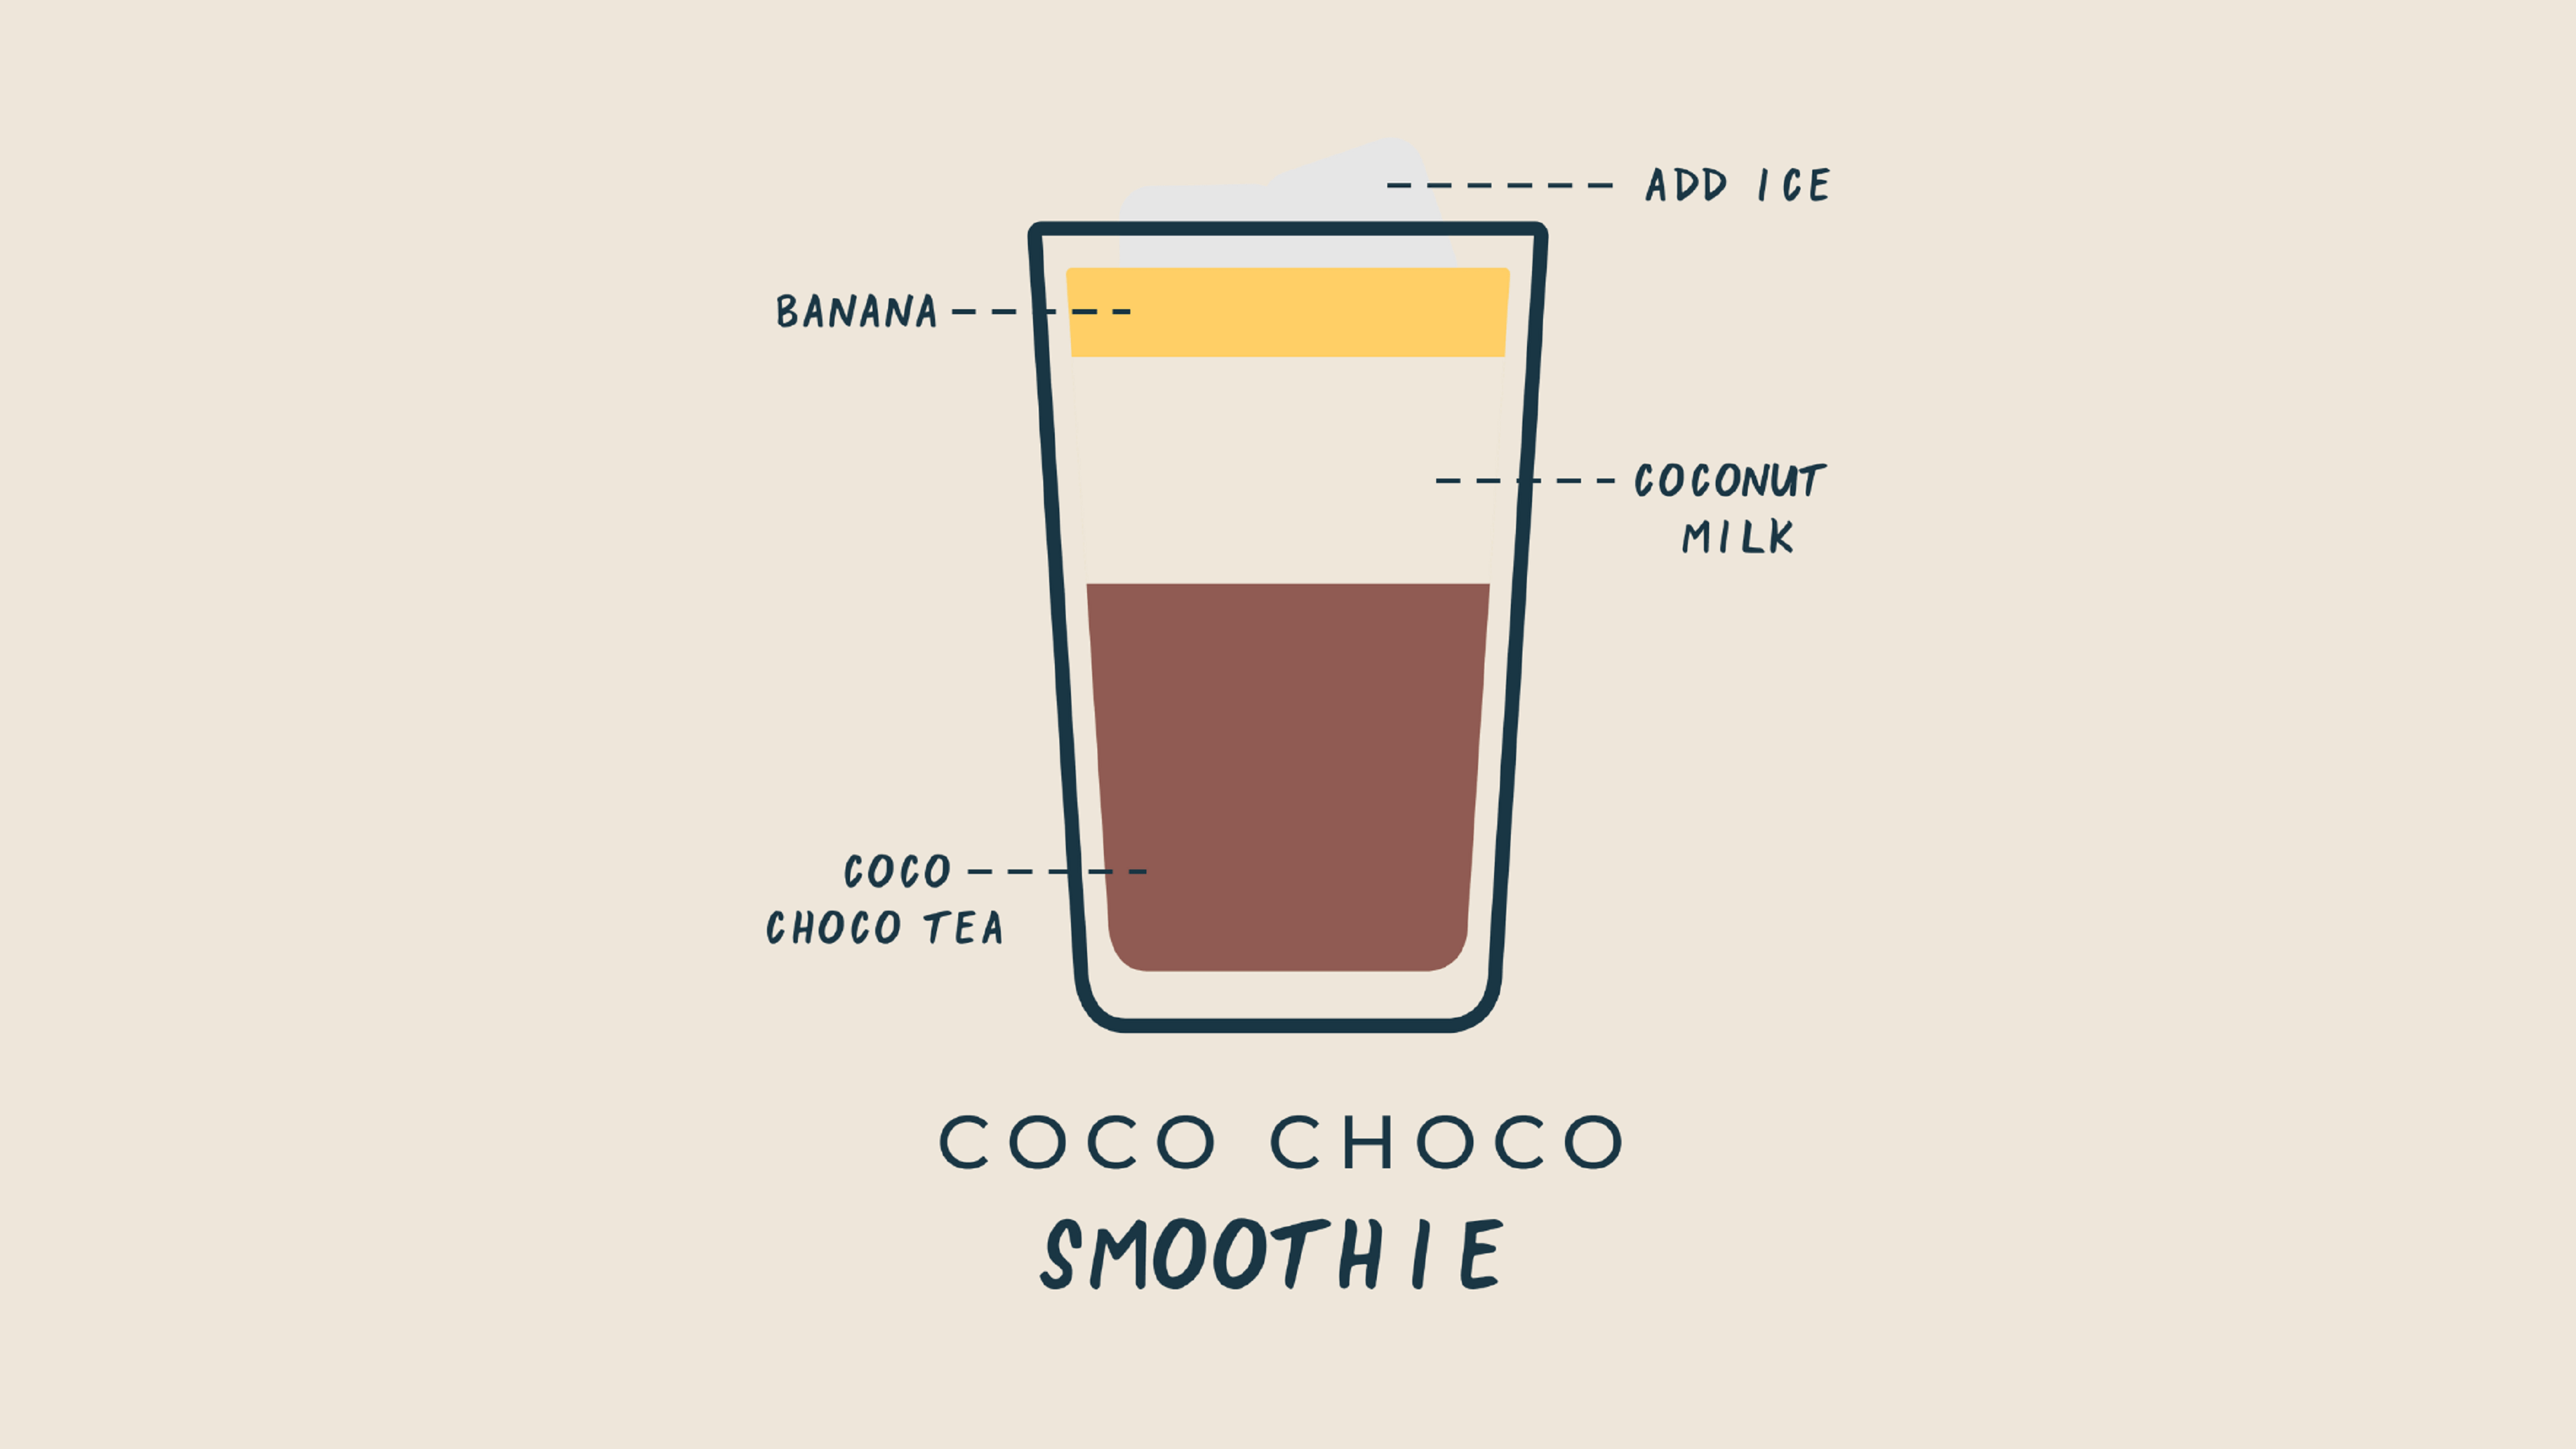 kazi-yetu-graphic-coco-choco-tea-infused-banana-smoothie